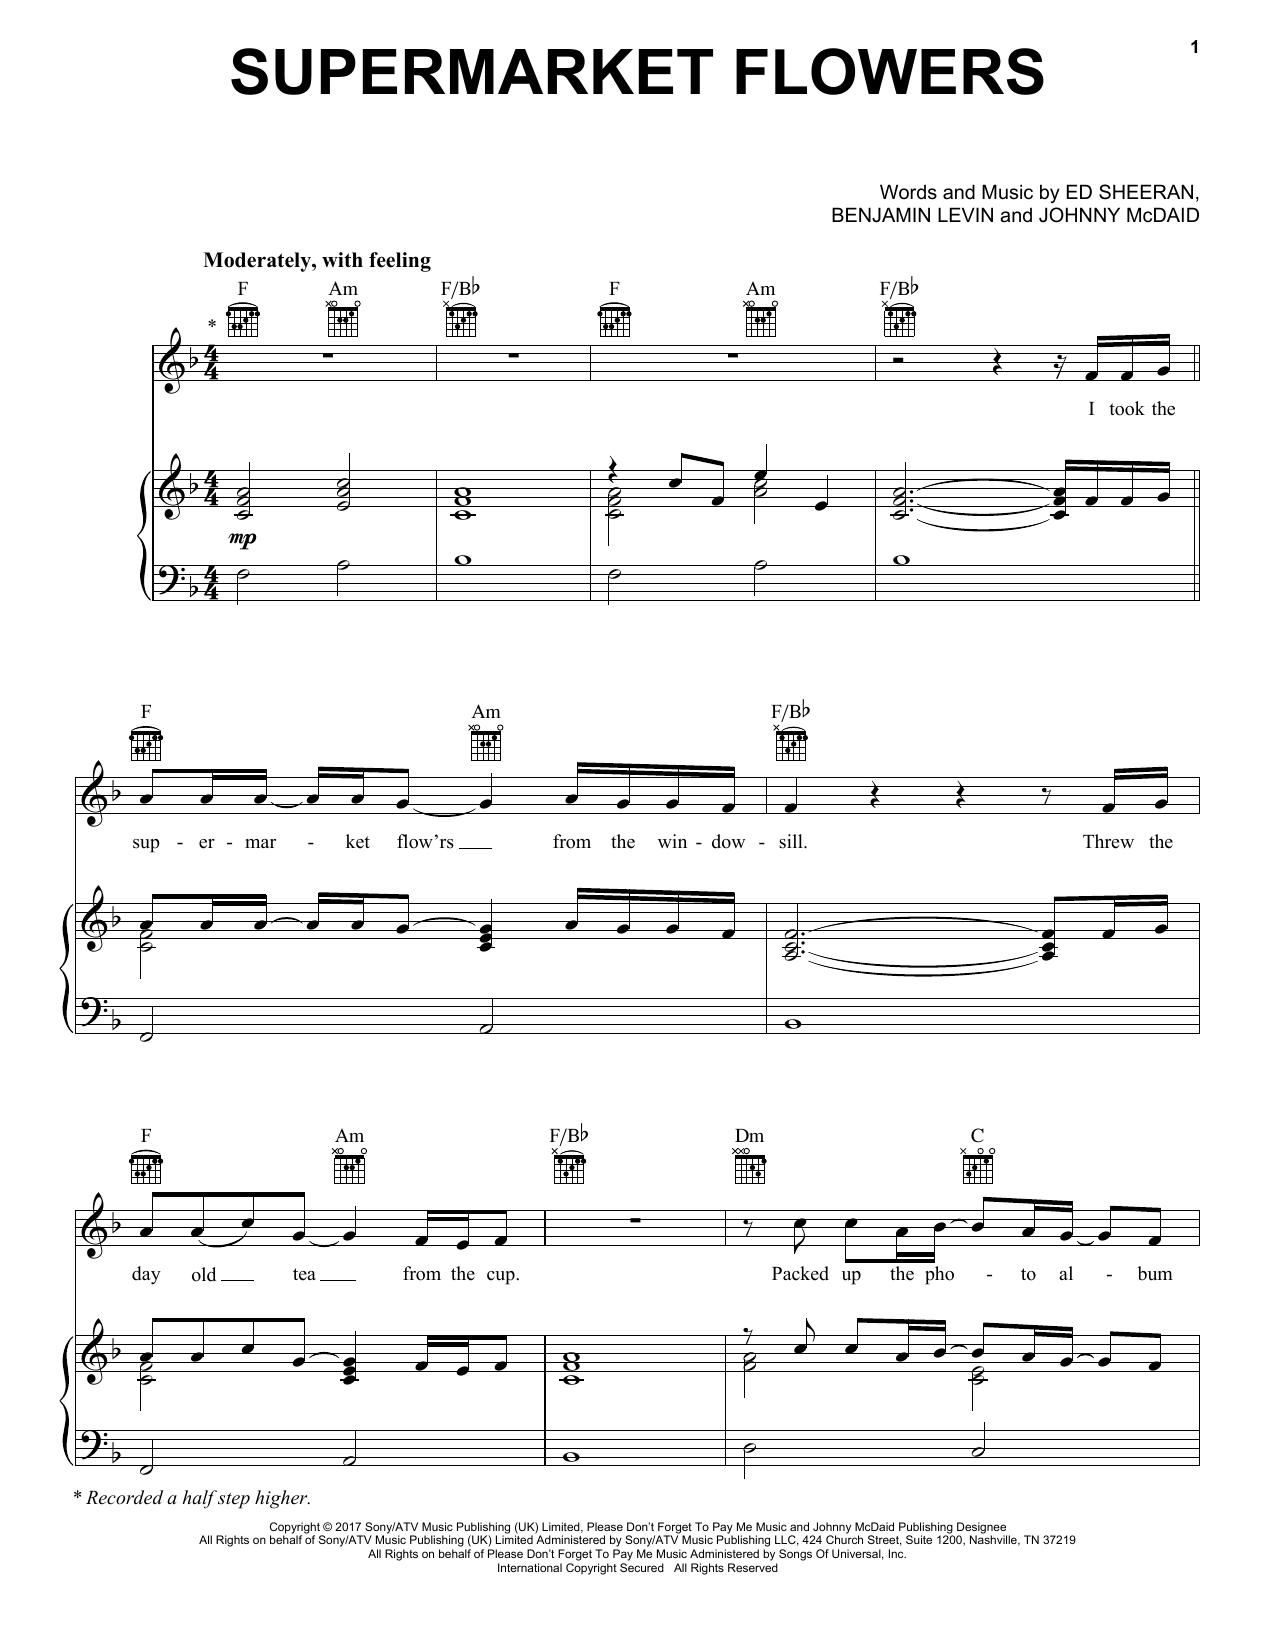 Ed Sheeran Supermarket Flowers Sheet Music Notes & Chords for Lyrics & Chords - Download or Print PDF